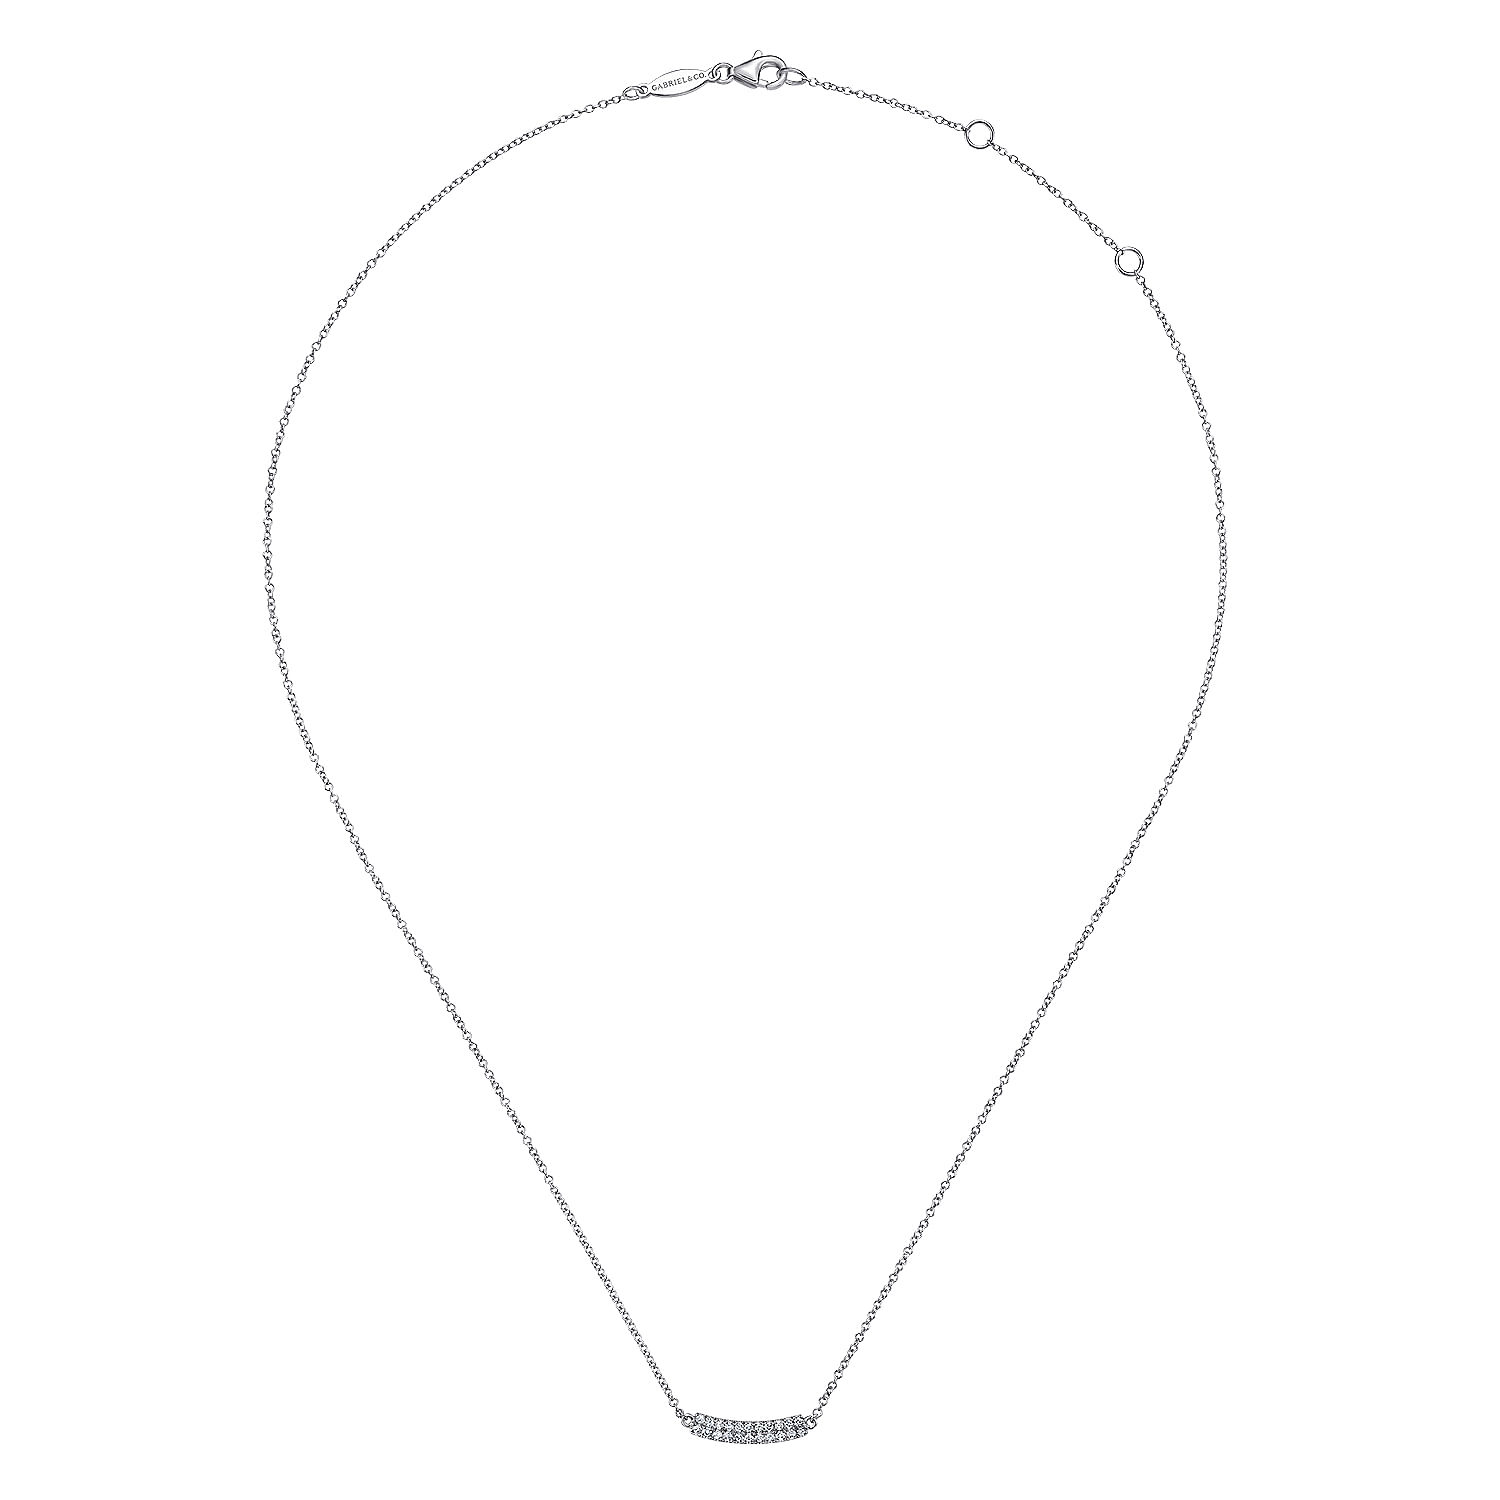 14K White Gold Curved Pavé Diamond Bar Necklace